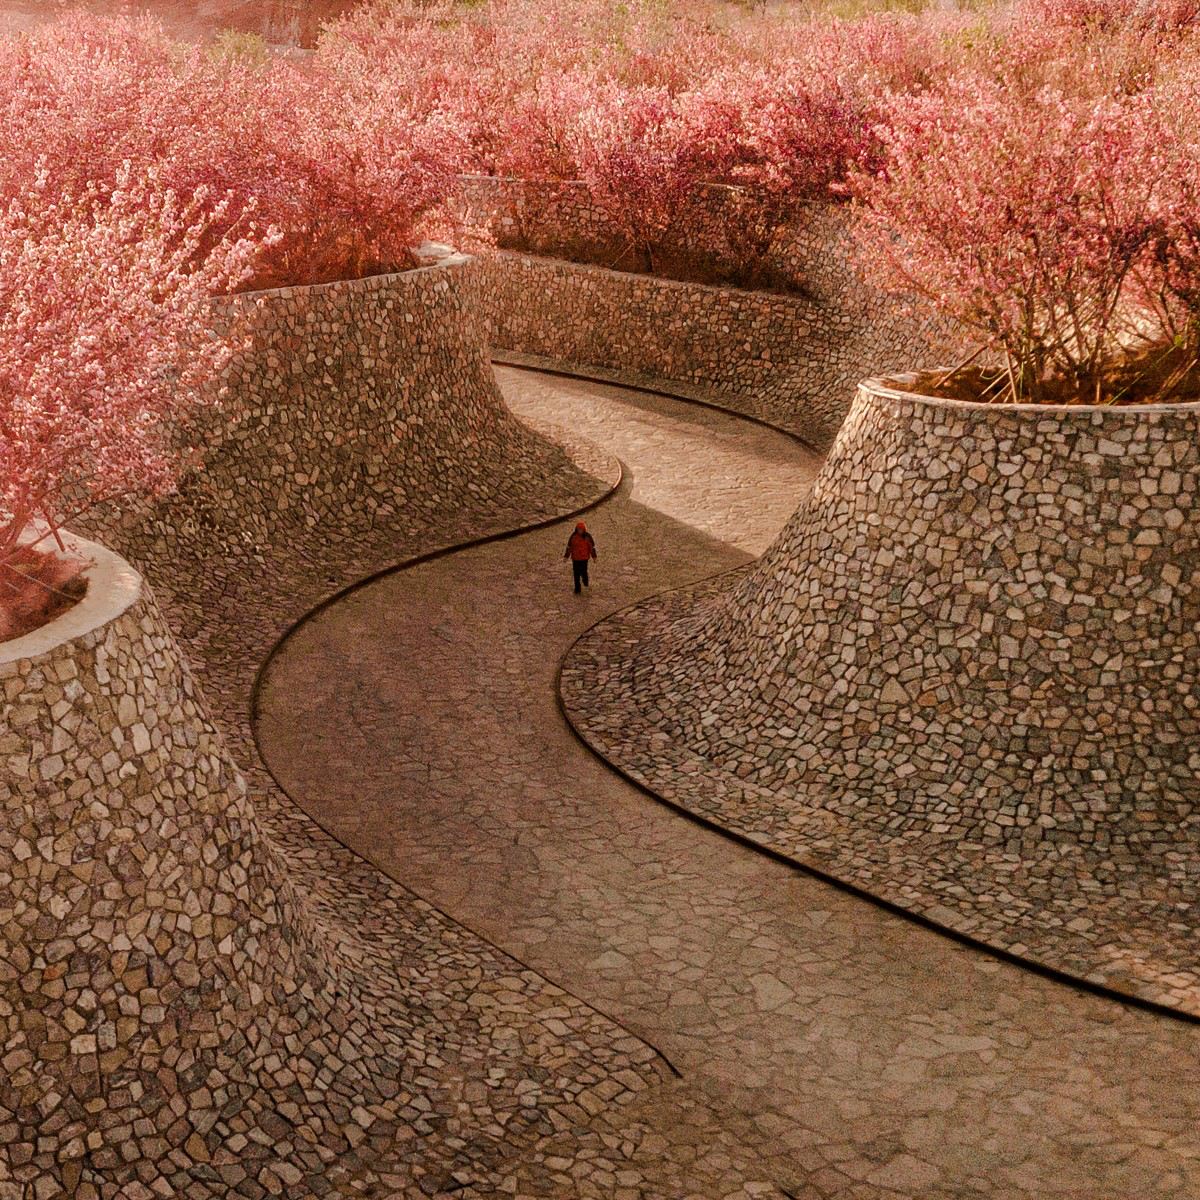 Rizhao Bailuwan Cherry Blossom Town: Doğanın ve Sanatın Buluştuğu Yer